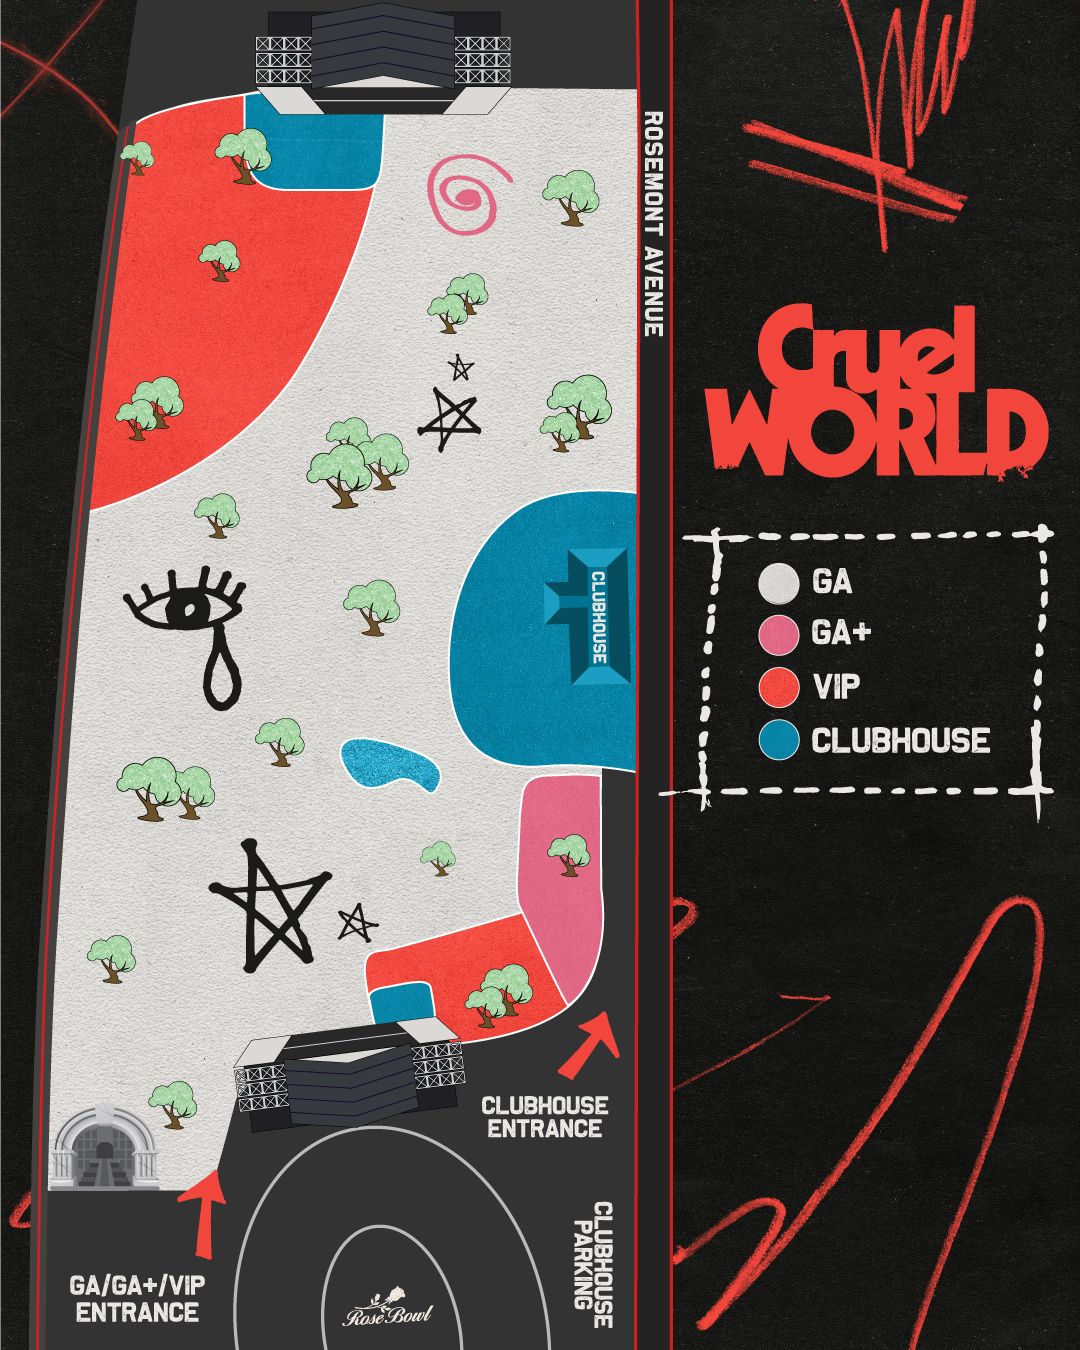 cruel world festival map